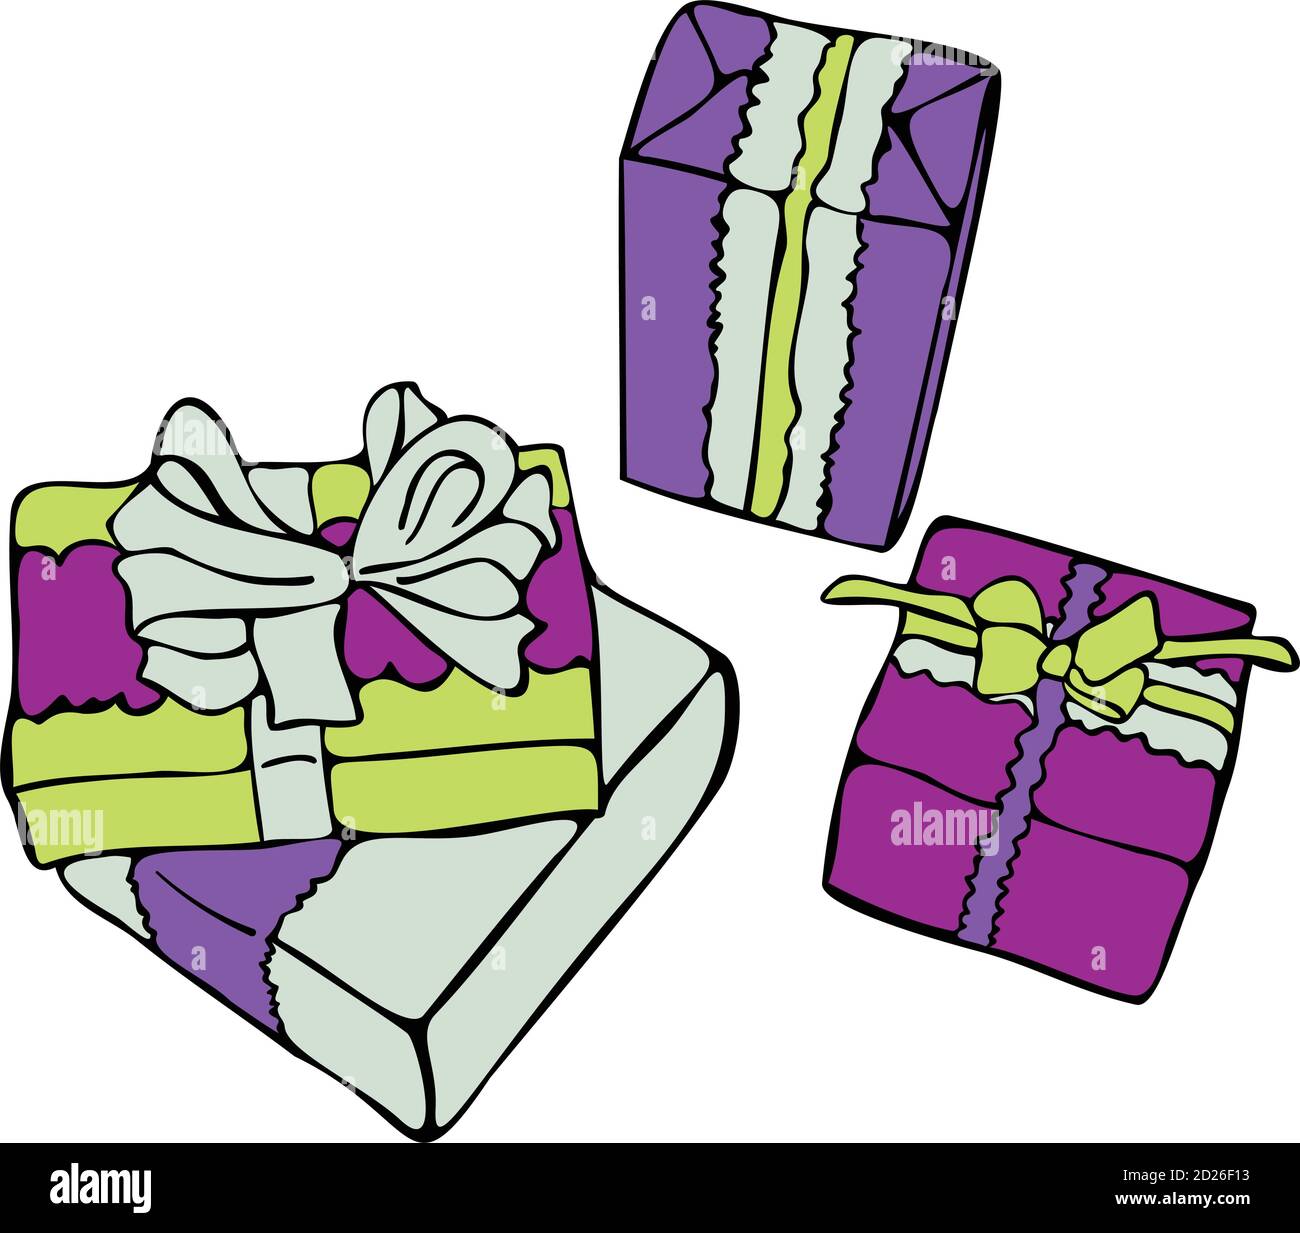 disegno della scatola regalo Immagine e Vettoriale - Alamy